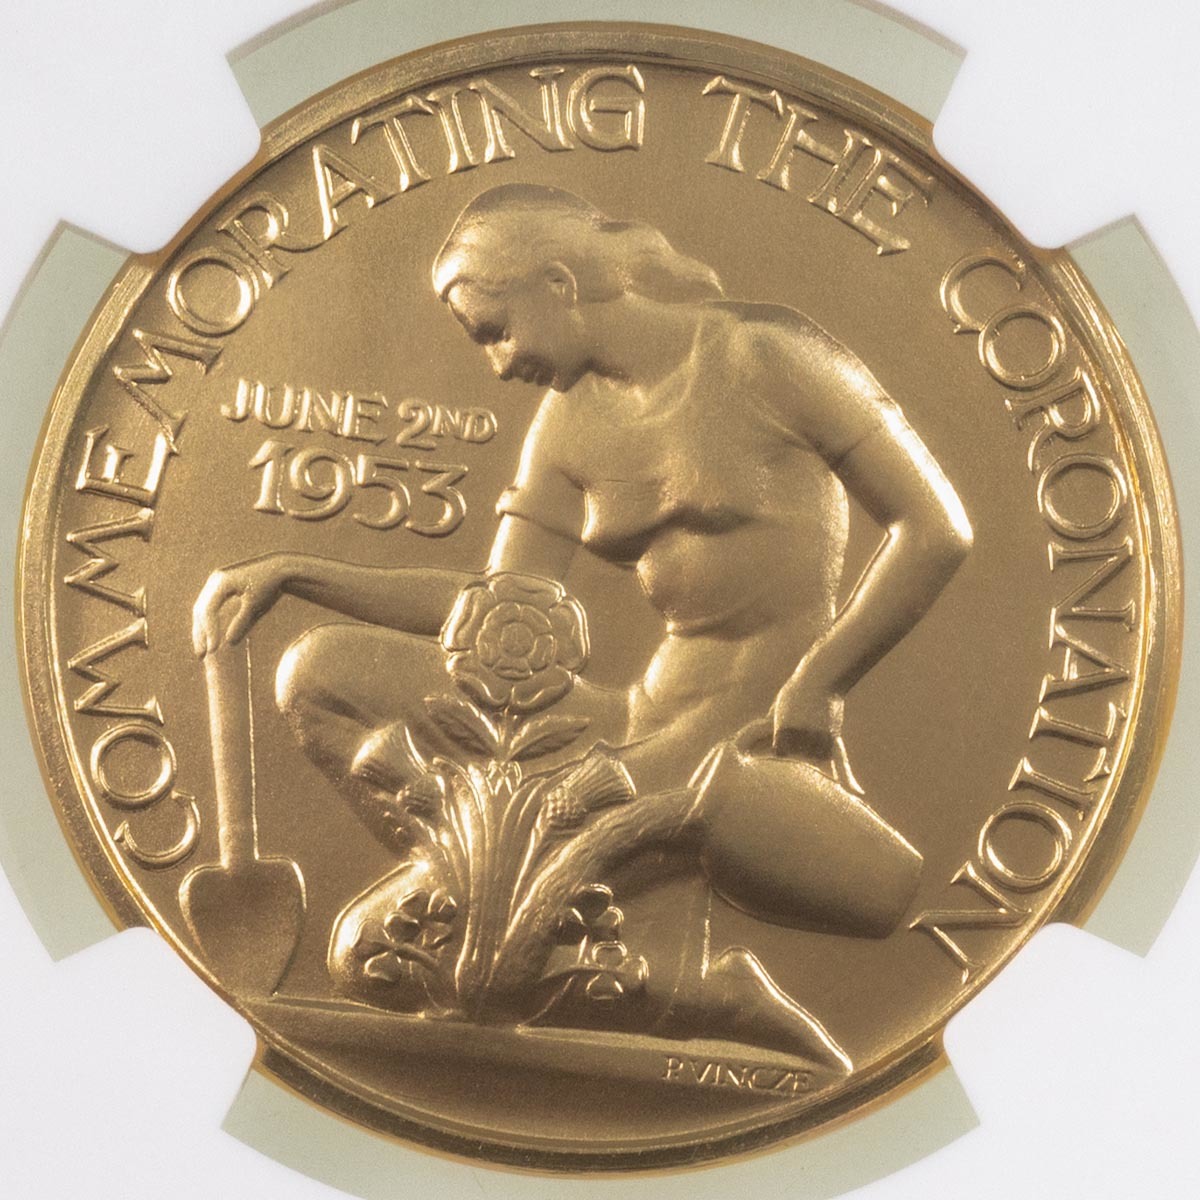 1953 Queen Elizabeth II Gold Coronation Medal Paul Vincze NGC Graded MS 63 Reverse